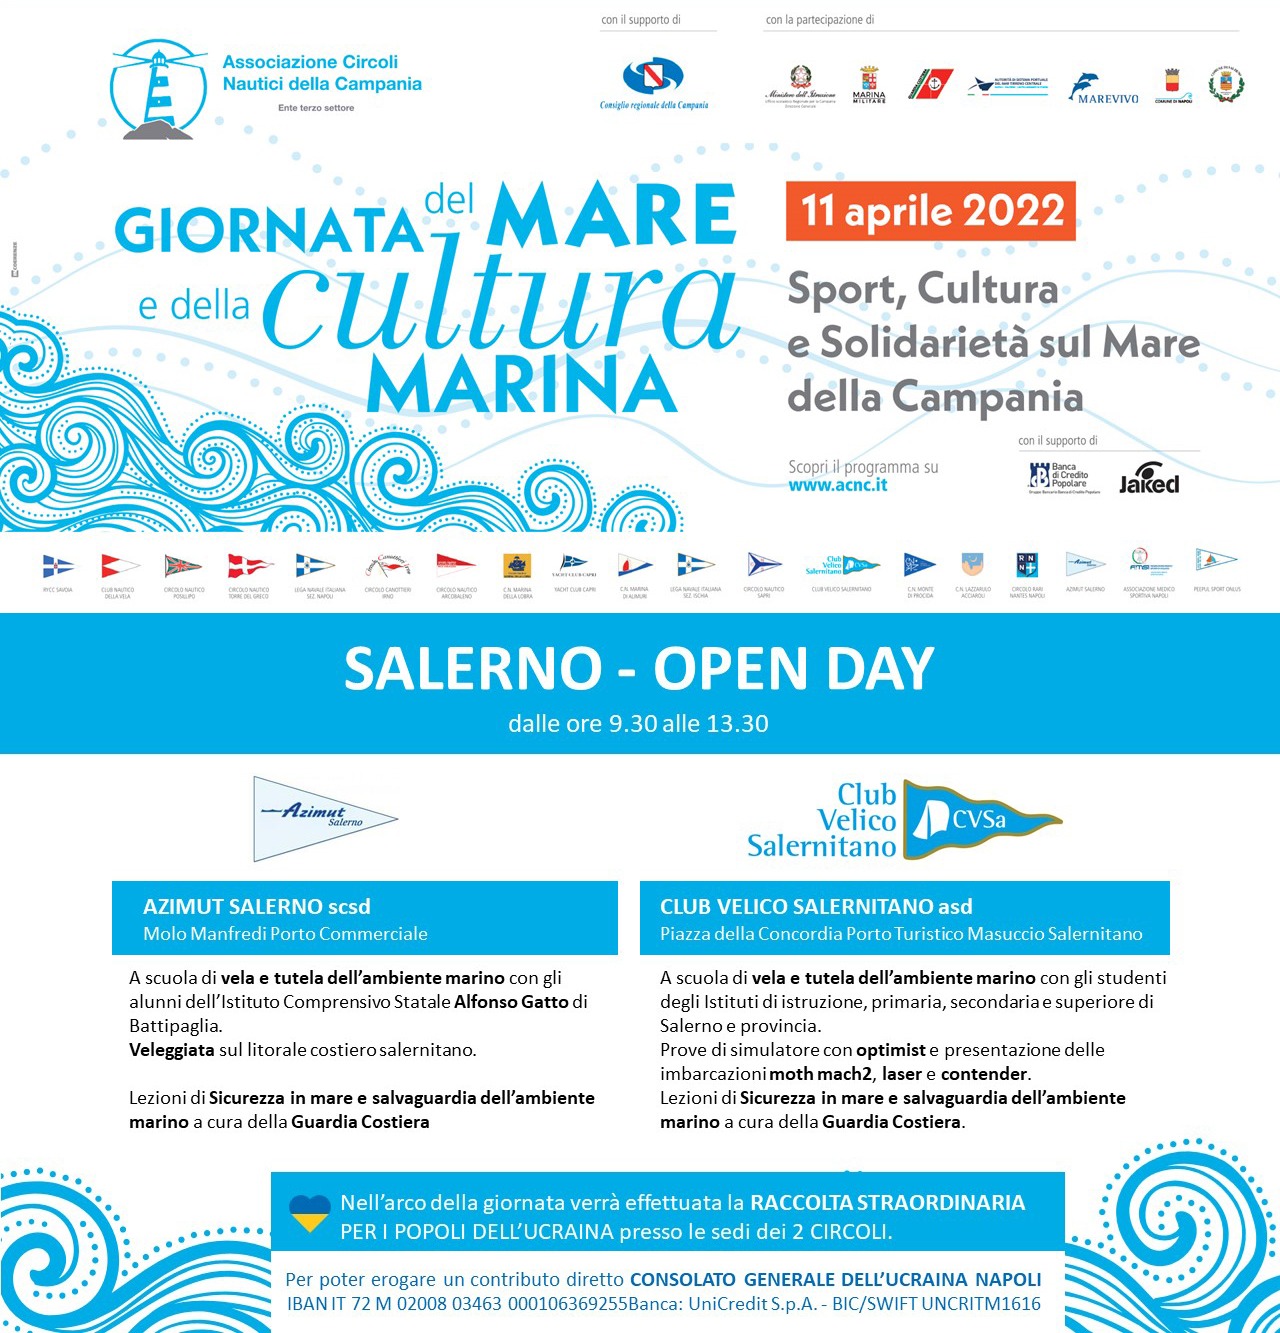 Salerno: Giornata del mare e della cultura marina “A scuola di vela e tutela dell’ambiente”,  Open Day